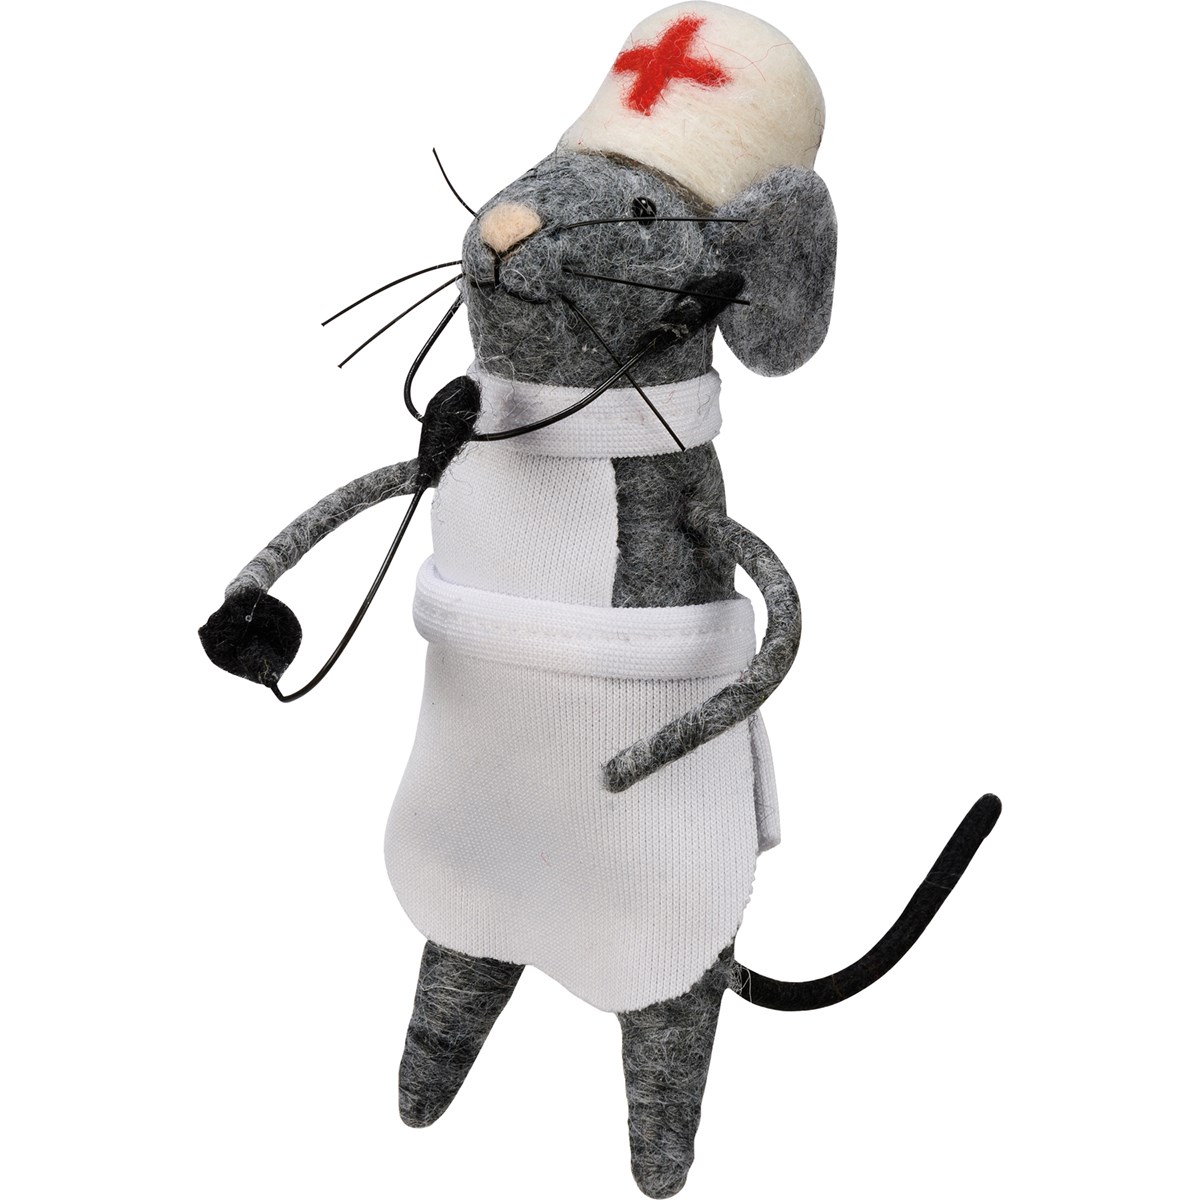 Nurse Mouse Critter - Felt, Plastic